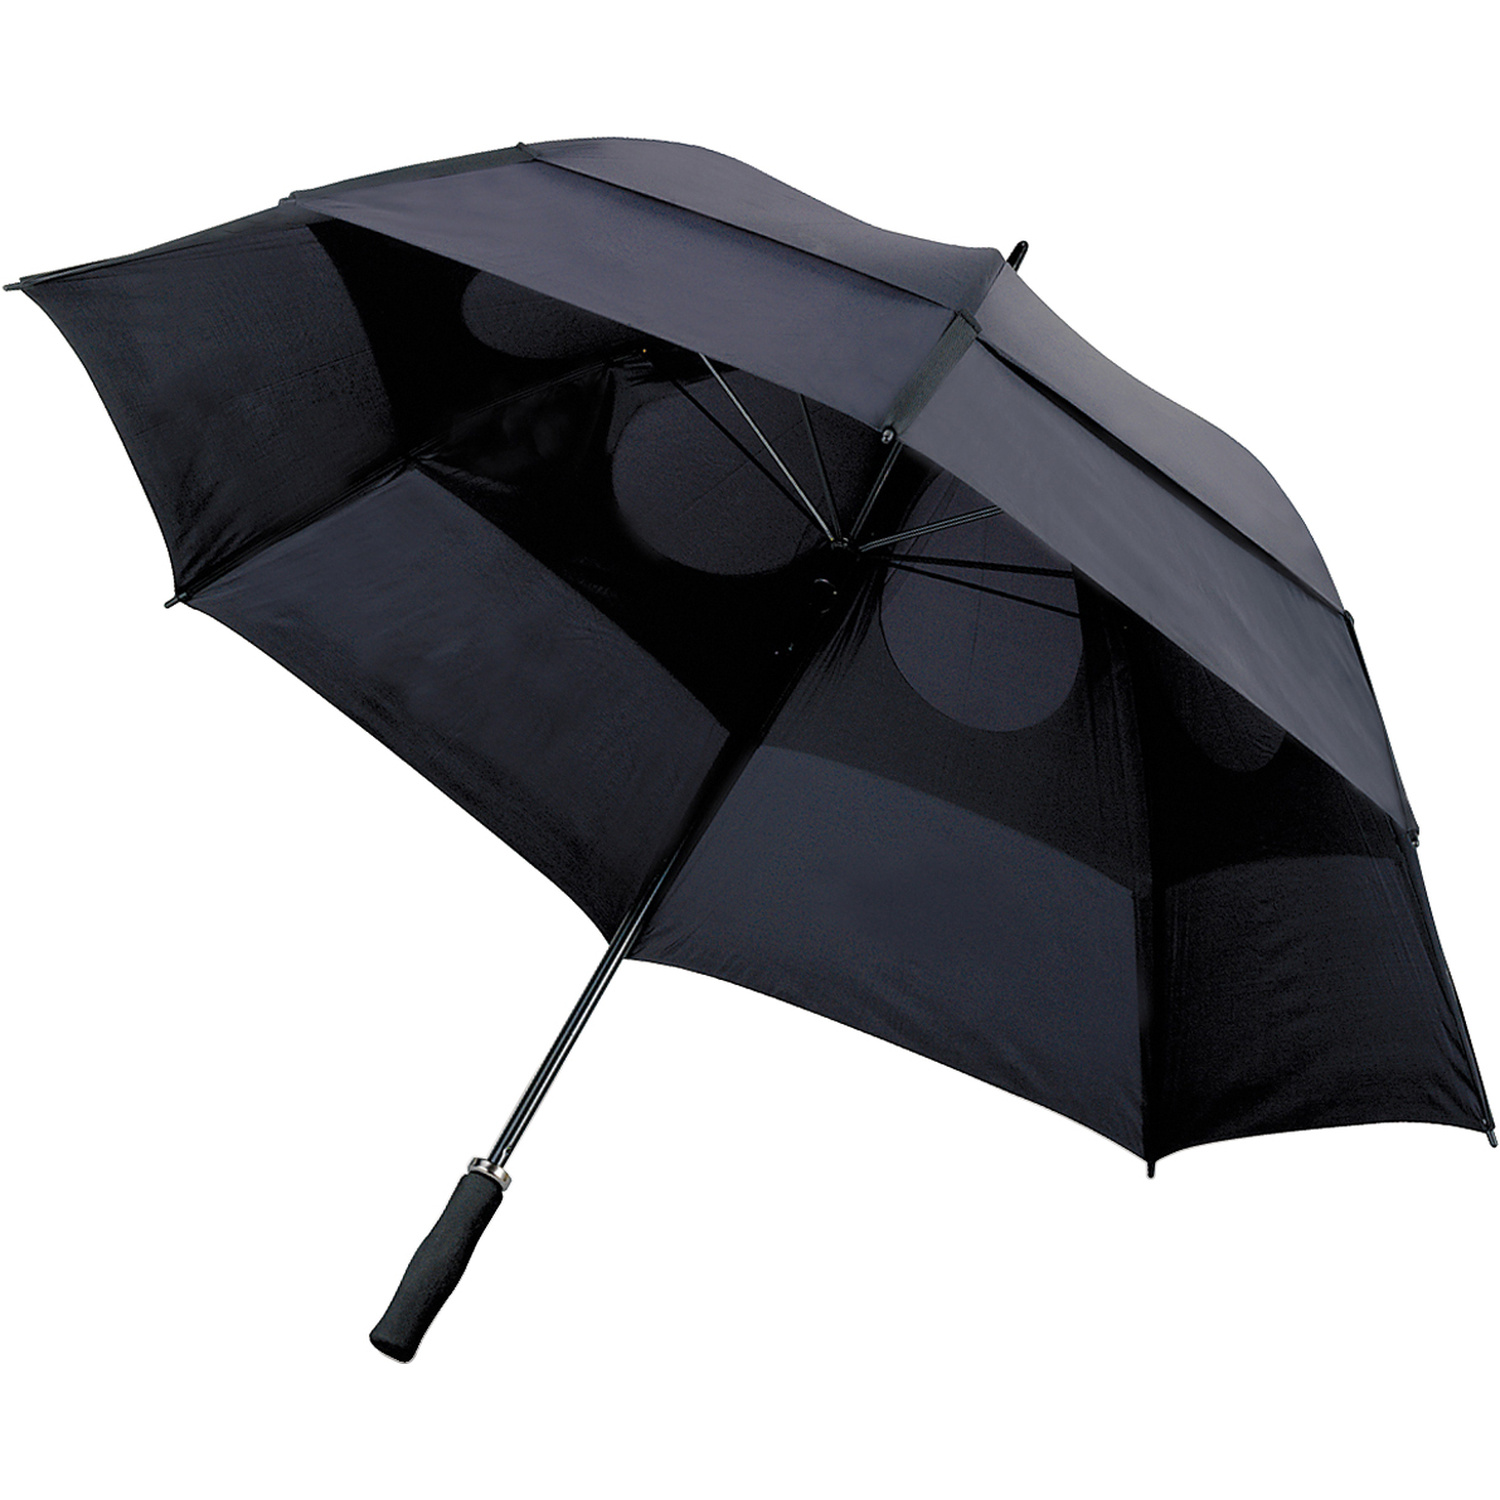 004089 001999999 3d045 ins pro01 fal - Storm-proof umbrella